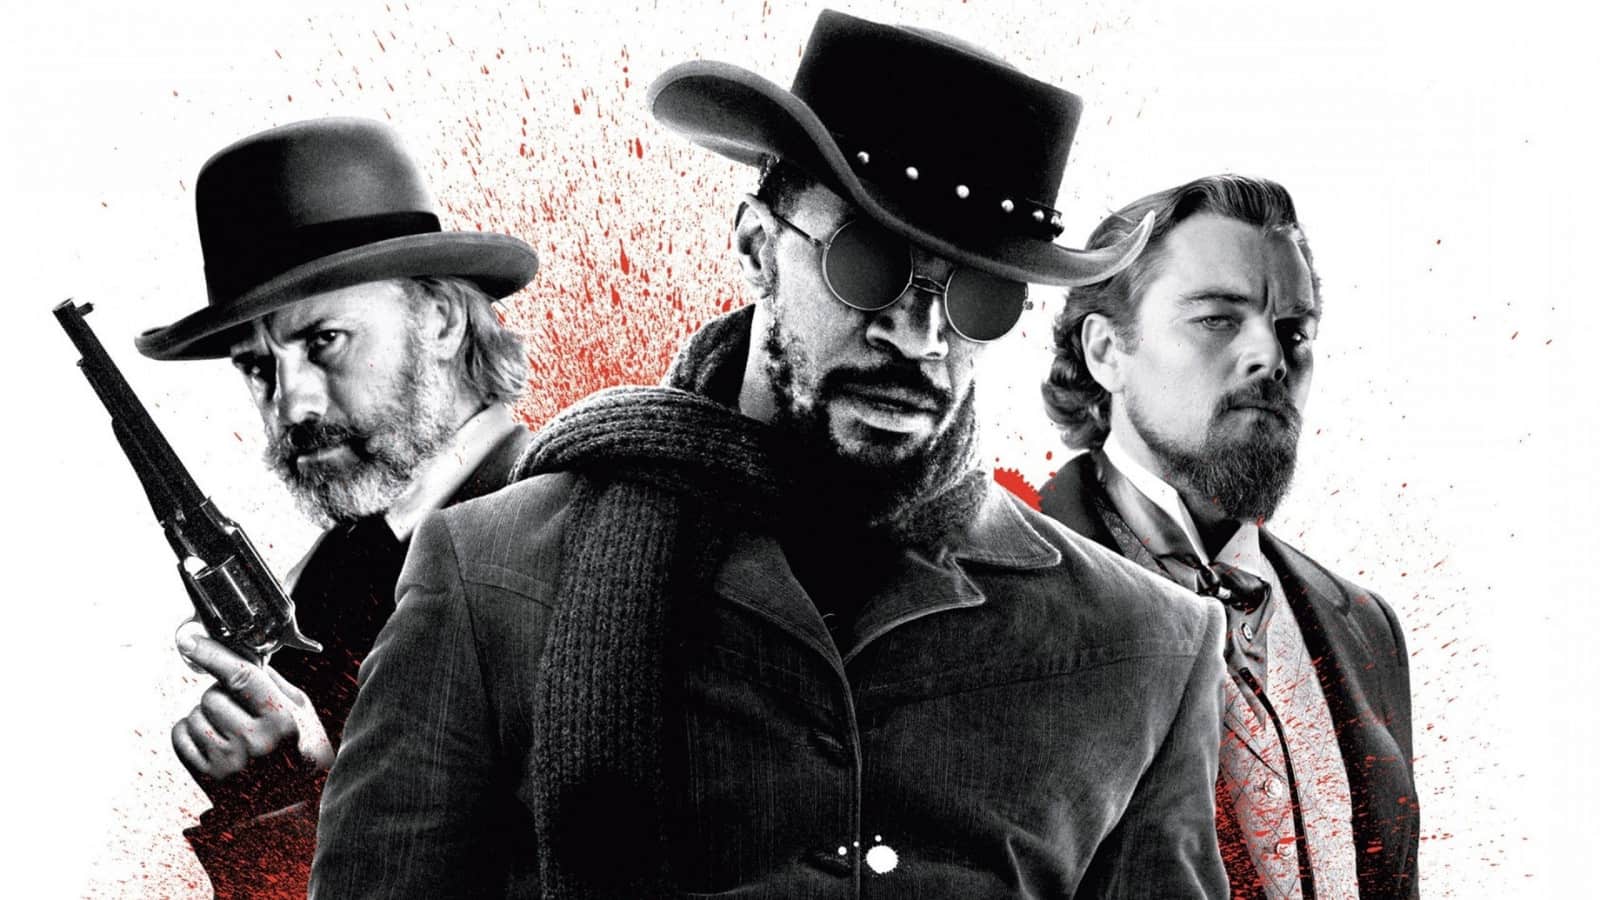 دانلود فیلم Django Unchained 2012